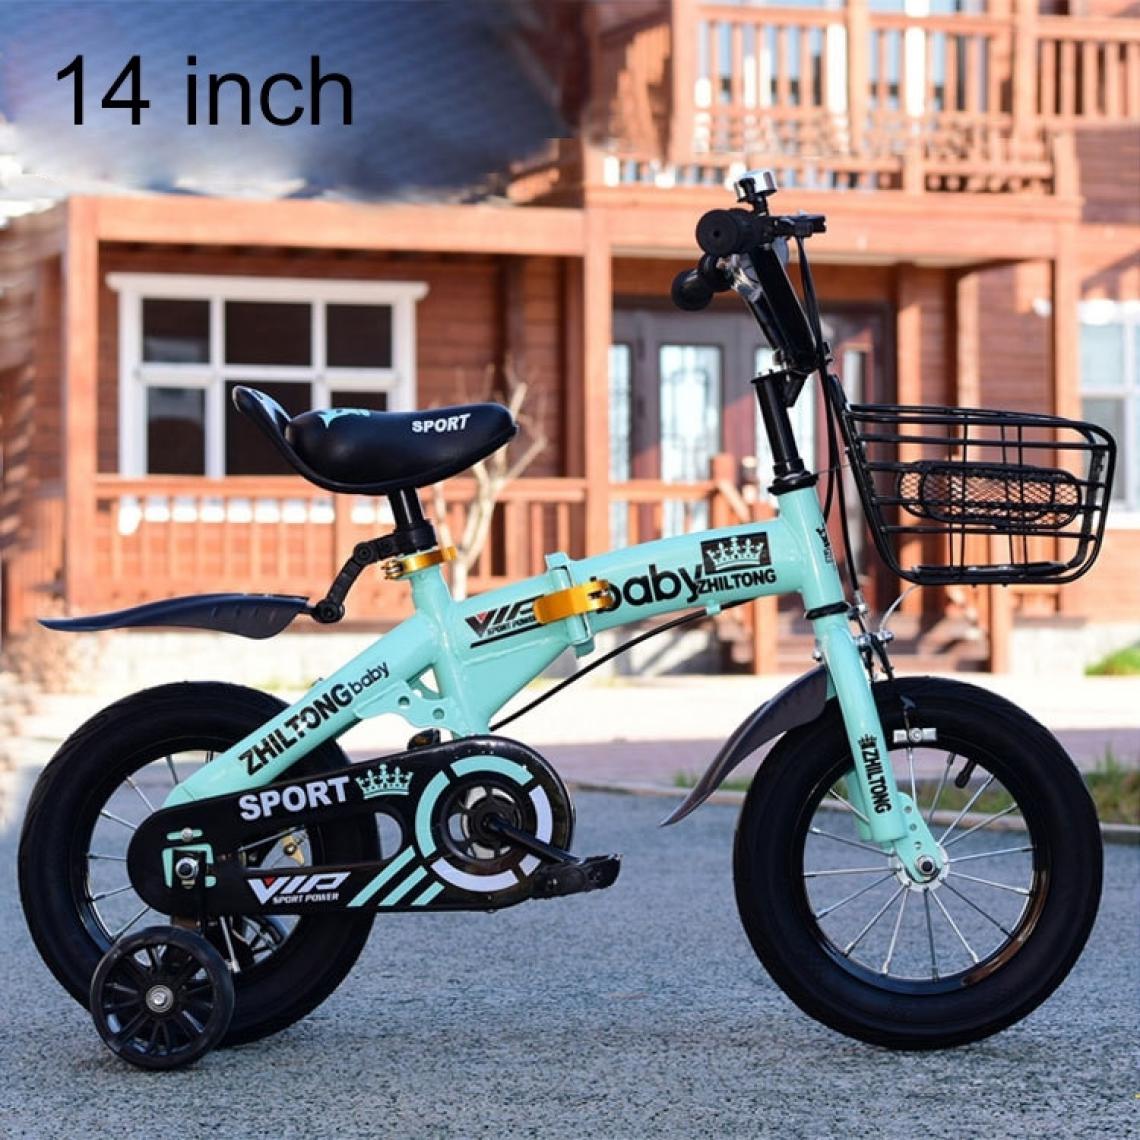 Wewoo - Jouet pour ZHILTONG 5166 vélo de montagne à pédale portable pliable enfant de 14 pouces avec panier avant et clochehauteur recommandée 100-115cm Vert - Jeux d'éveil